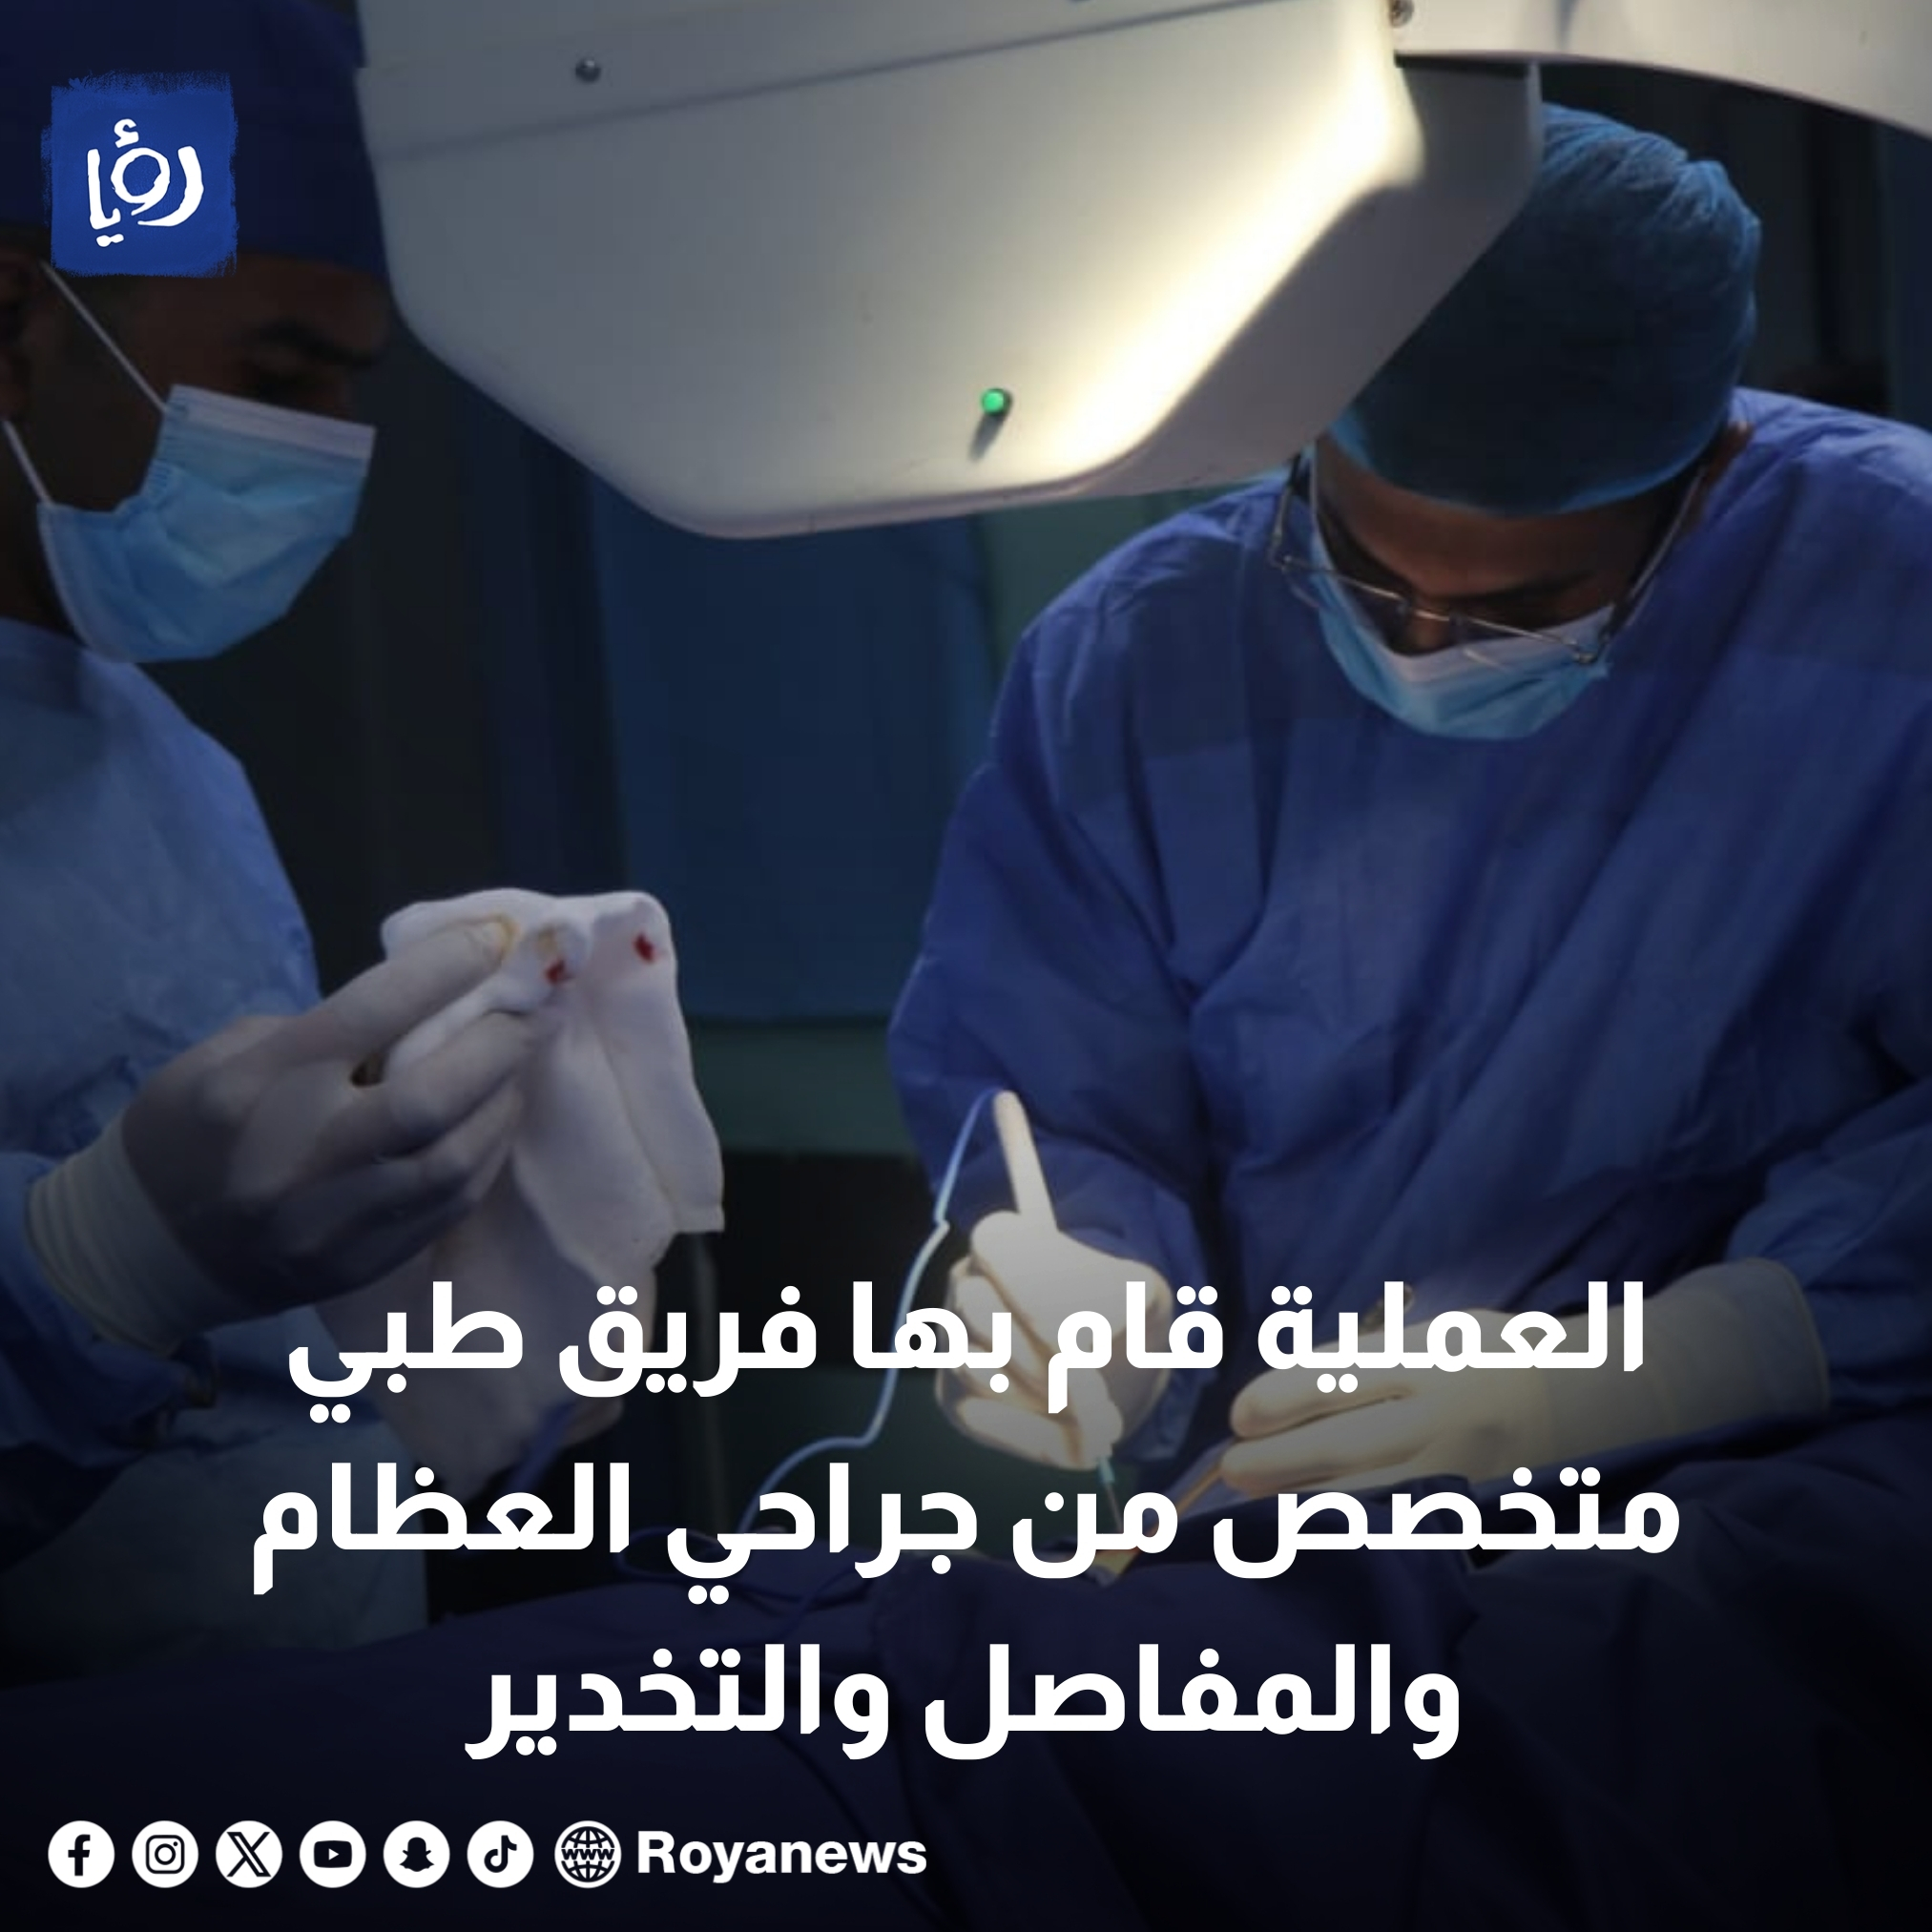 المستشفى الميداني الأردني غزة /78 يجري عملية جراحية نوعية #عاجل 